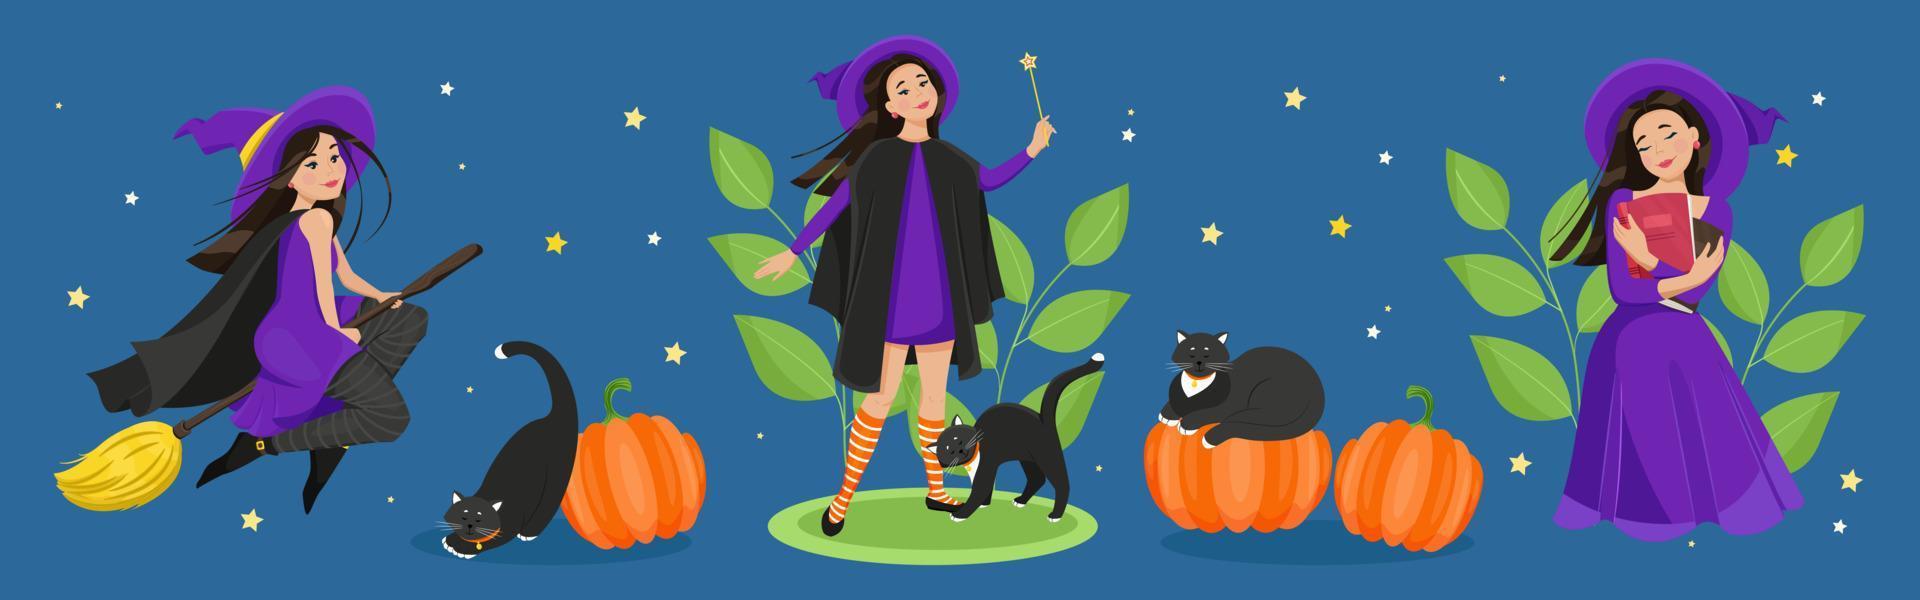 vrouwelijke personages voor halloween set. een schattige heks in een mantel en kousen vliegt op een bezemsteel, een zwarte kat, pompoenen. vector illustratie